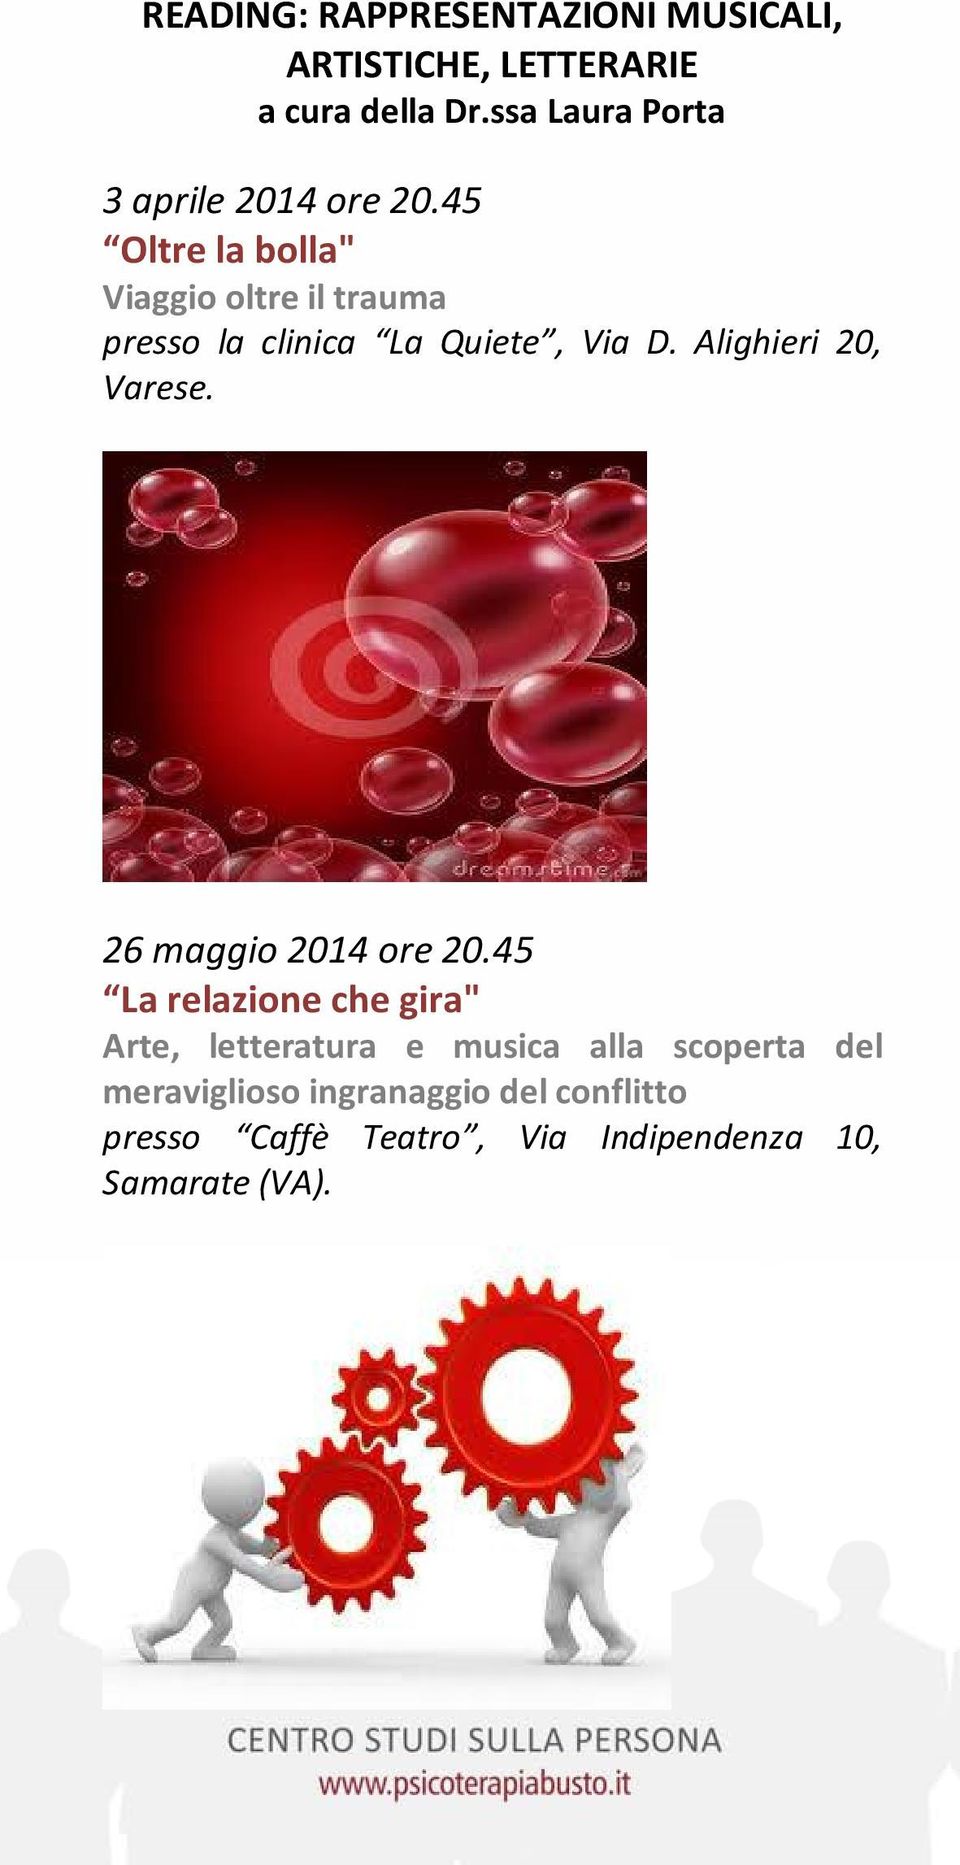 45 Oltre la bolla" Viaggio oltre il trauma presso la clinica La Quiete, Via D. Alighieri 20, Varese.